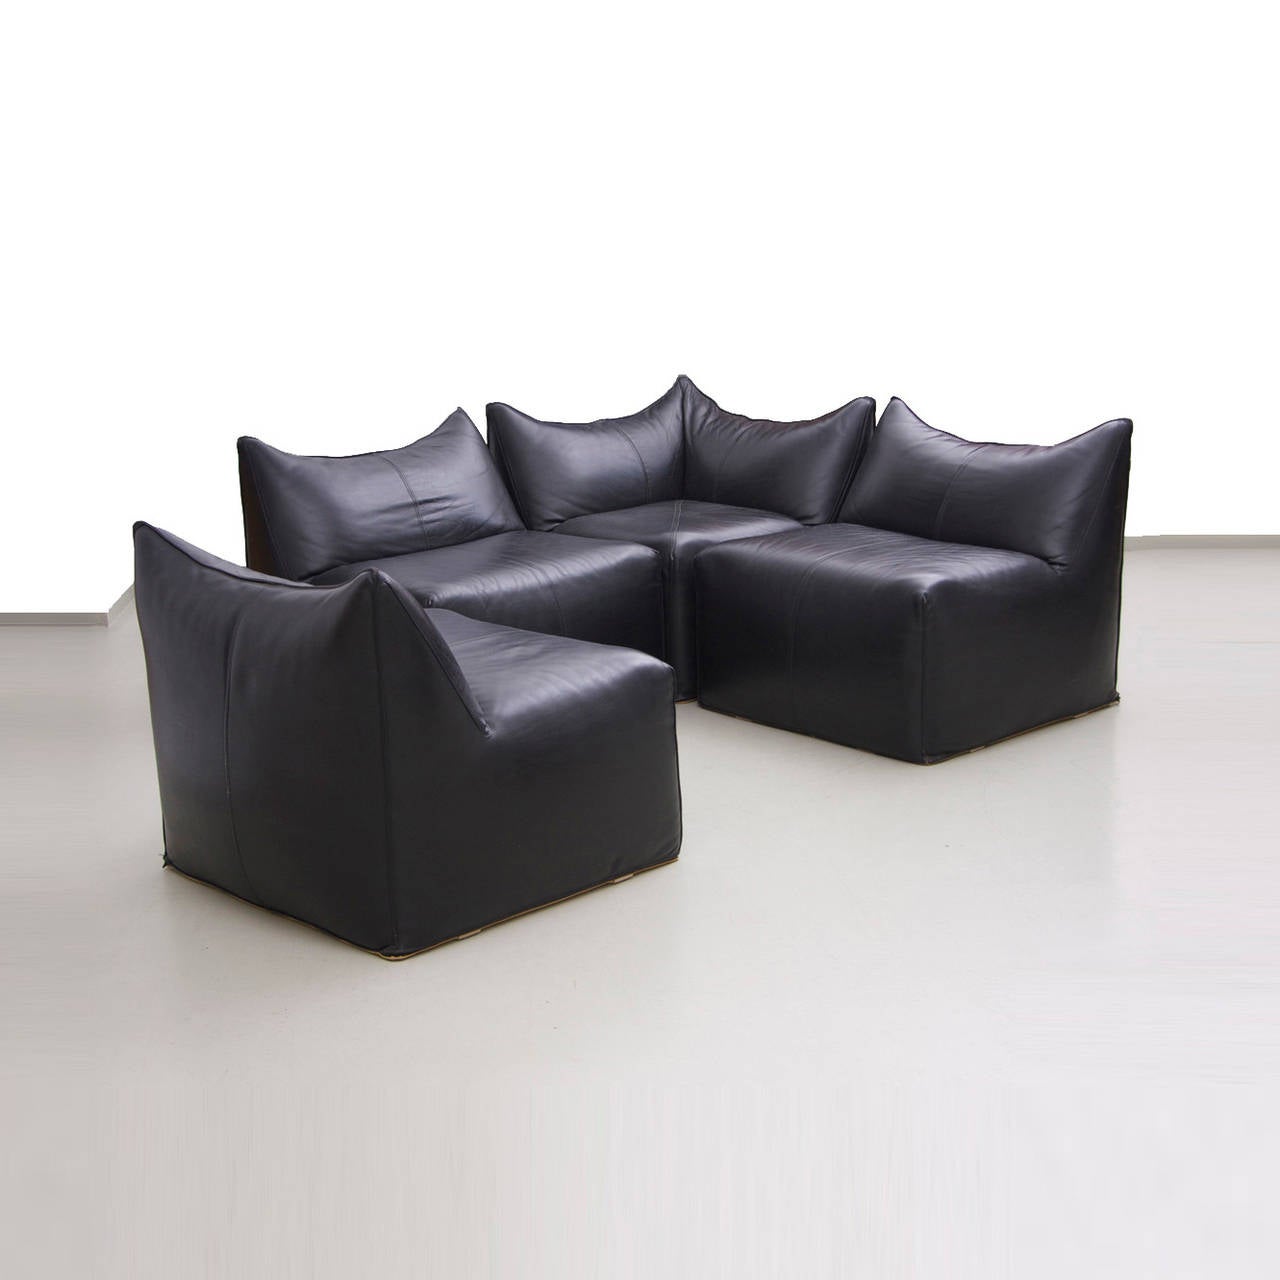 Mario Bellini sofa Le Bambole for B&B Italia in black leather in excellent condition.